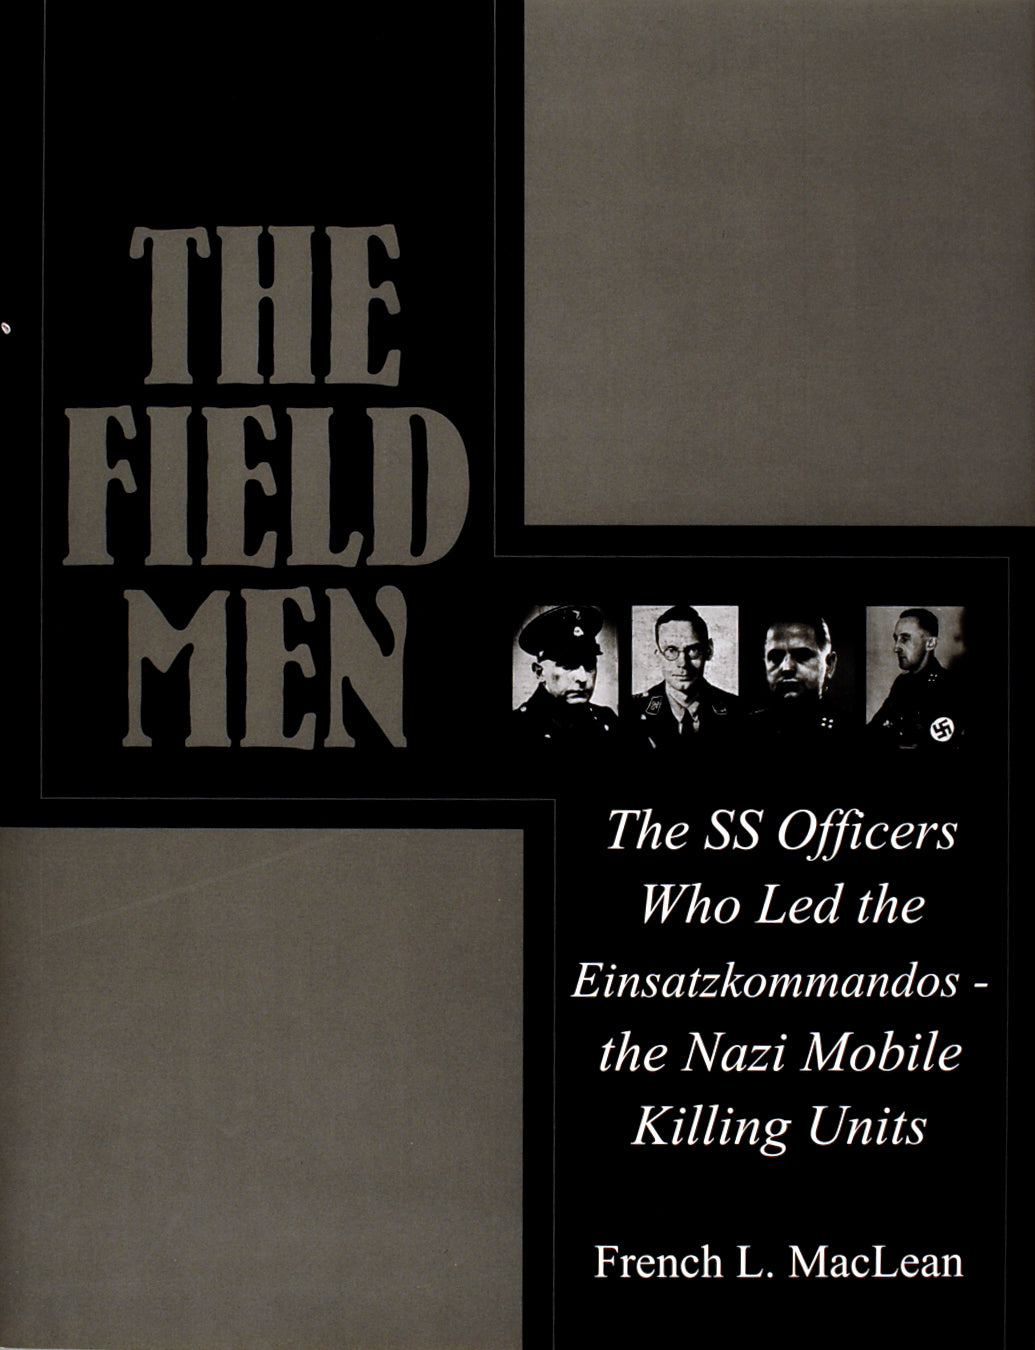 The Field Men